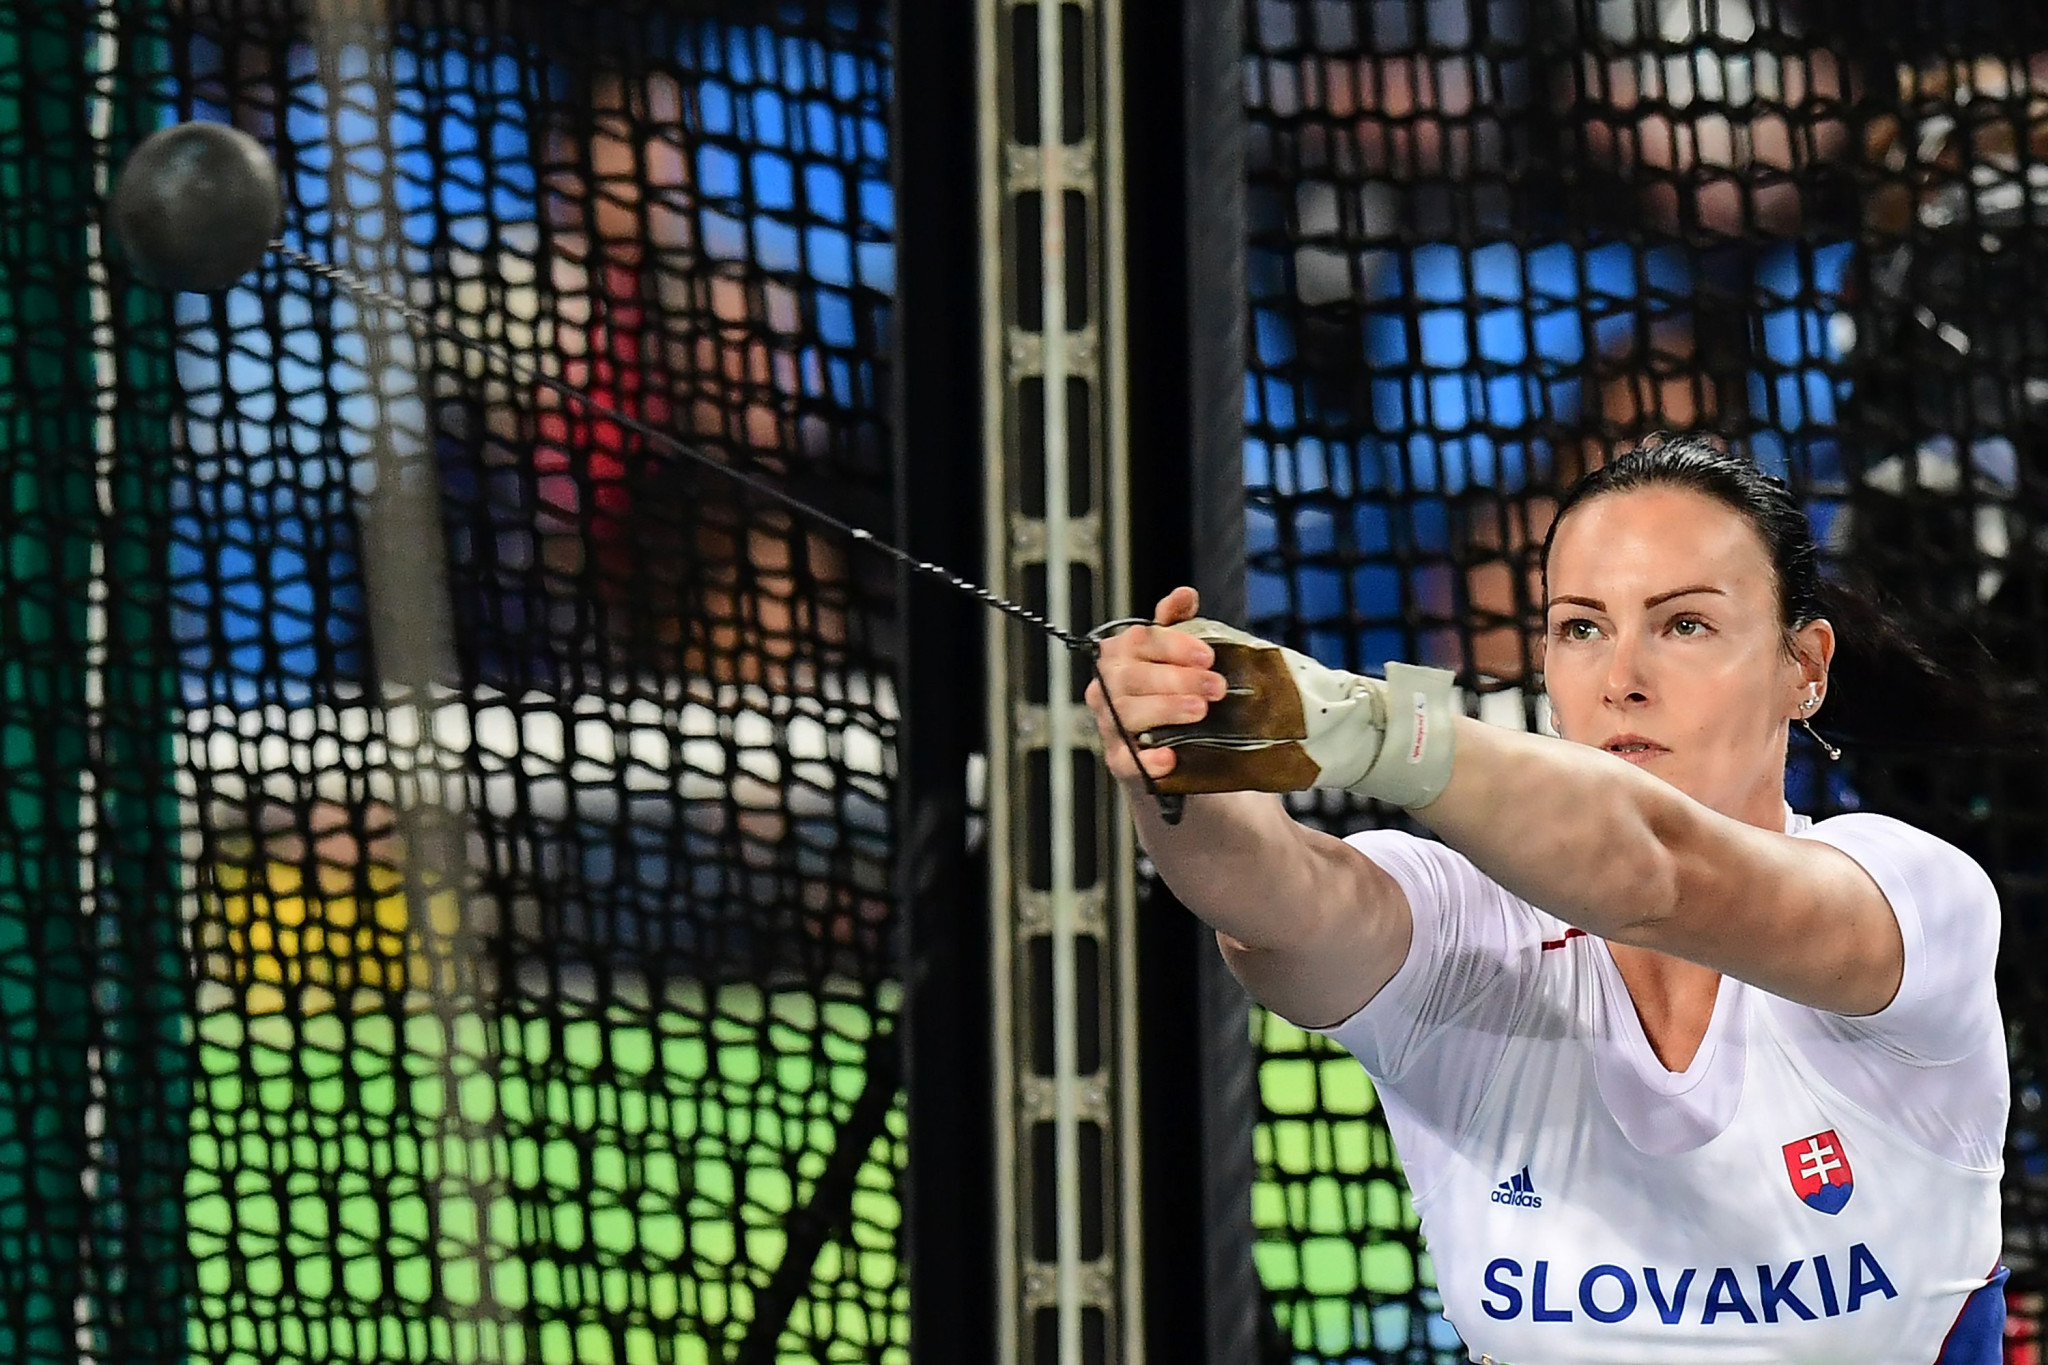 Martina Hrašnová espère concourir en athlétisme à Tokyo 2020, pas en haltérophilie © Getty Images